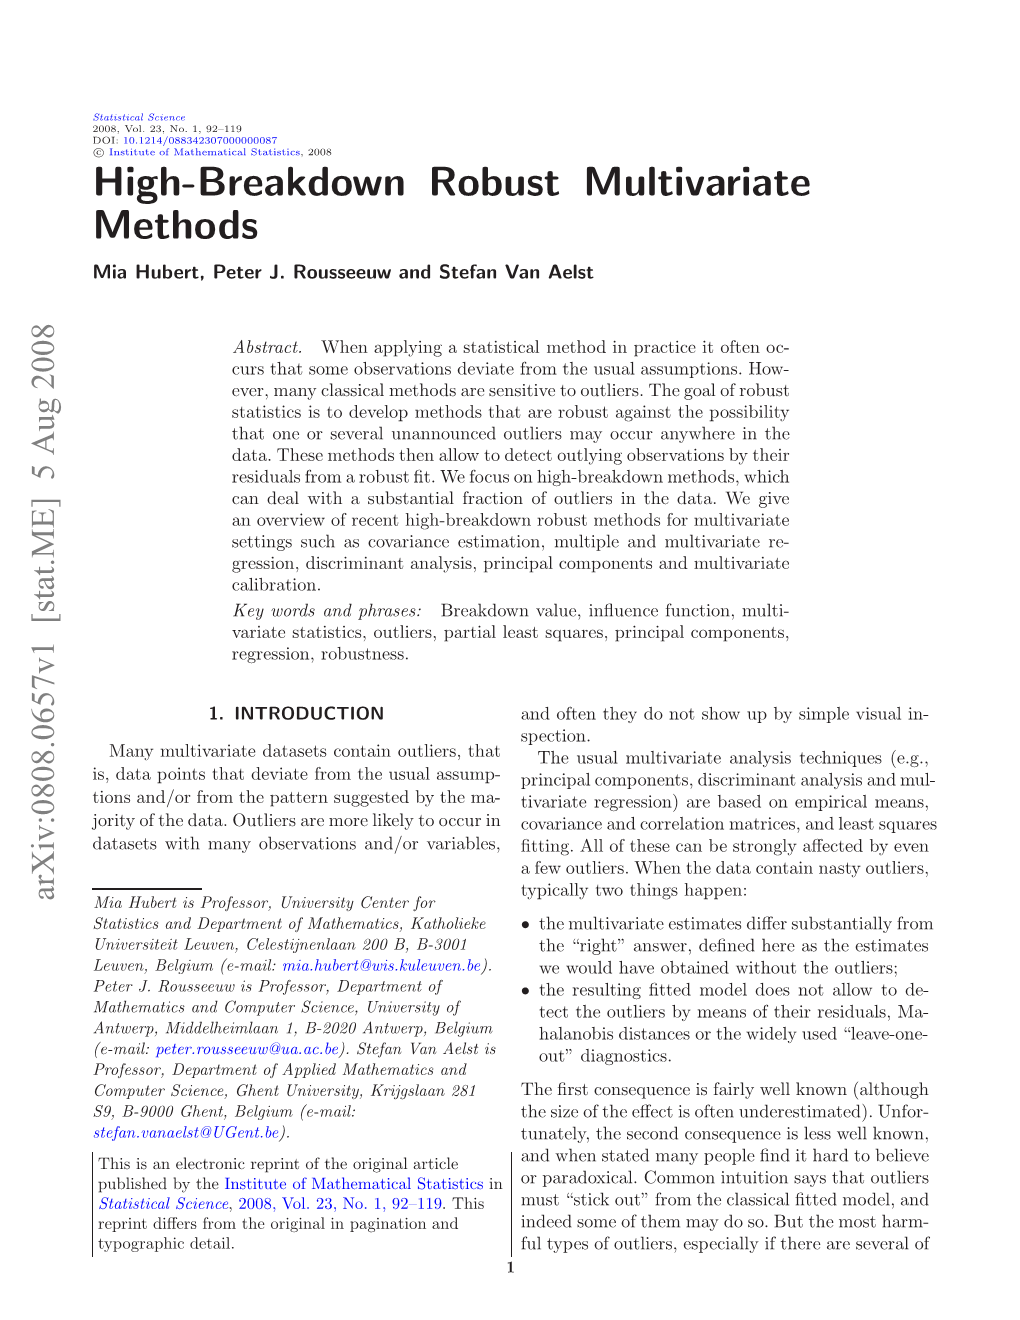 High-Breakdown Robust Multivariate Methods